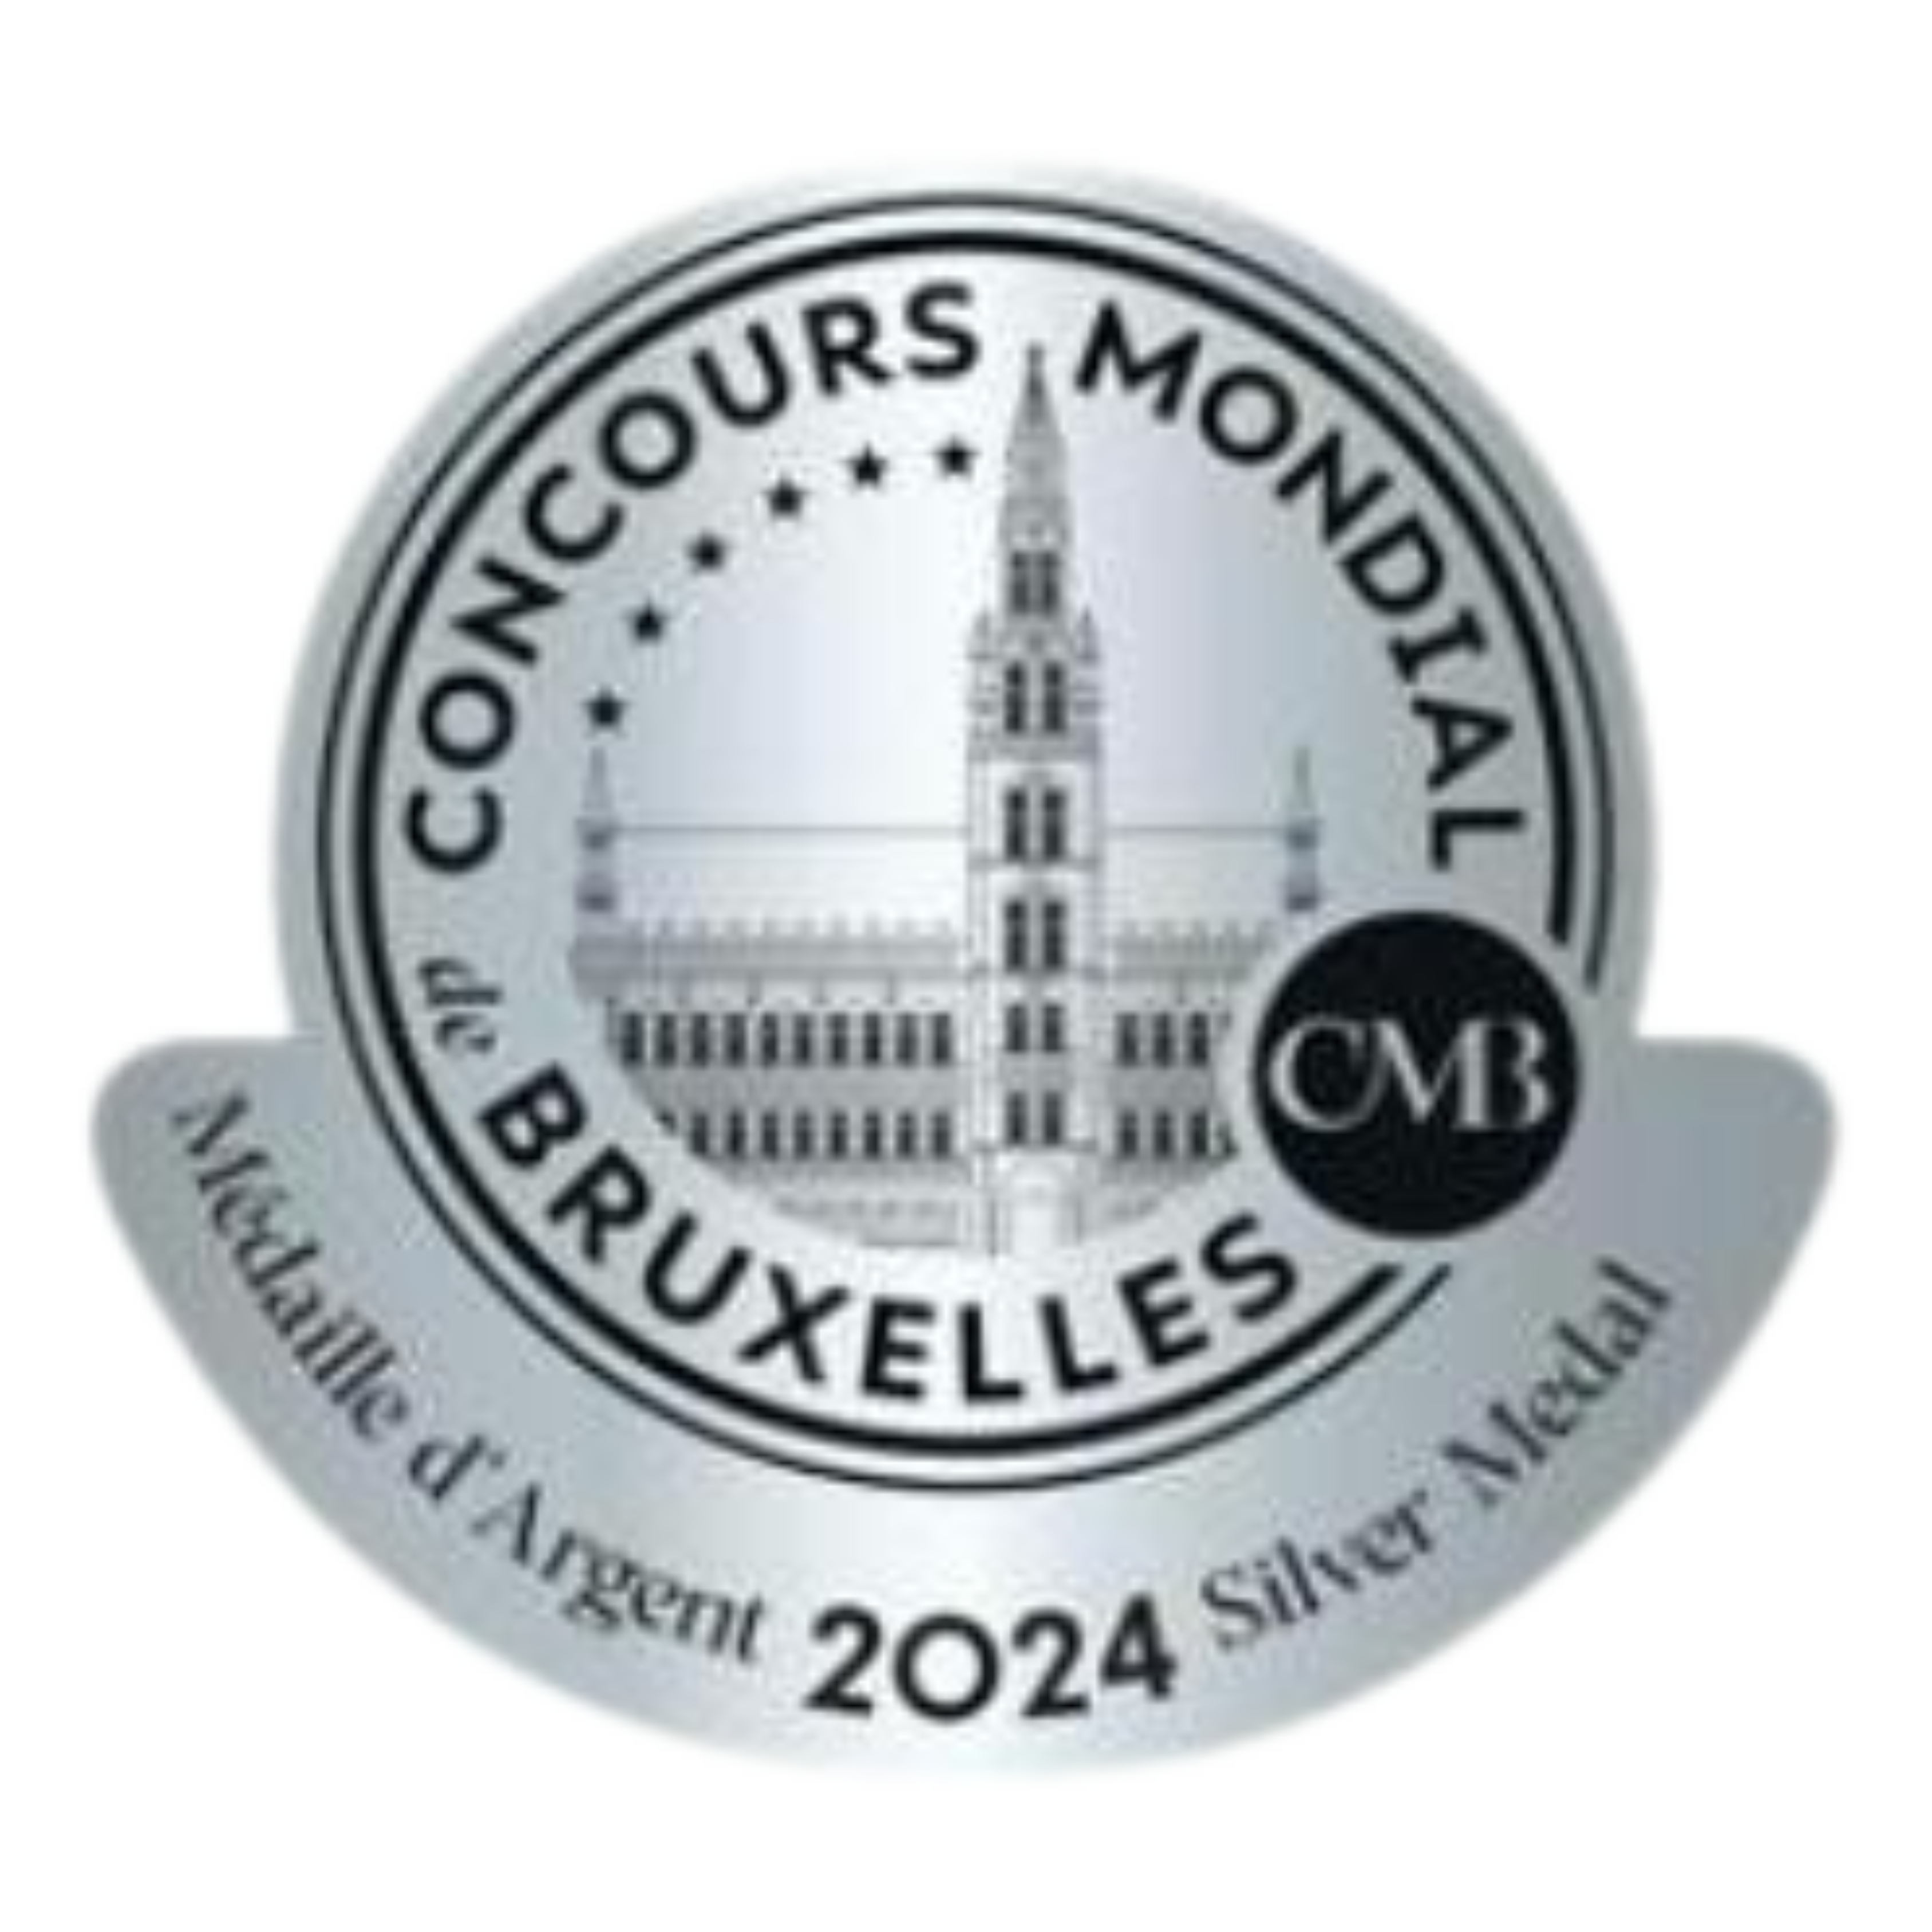 CONCOURS MONDIAL de BRUXELLES 2024